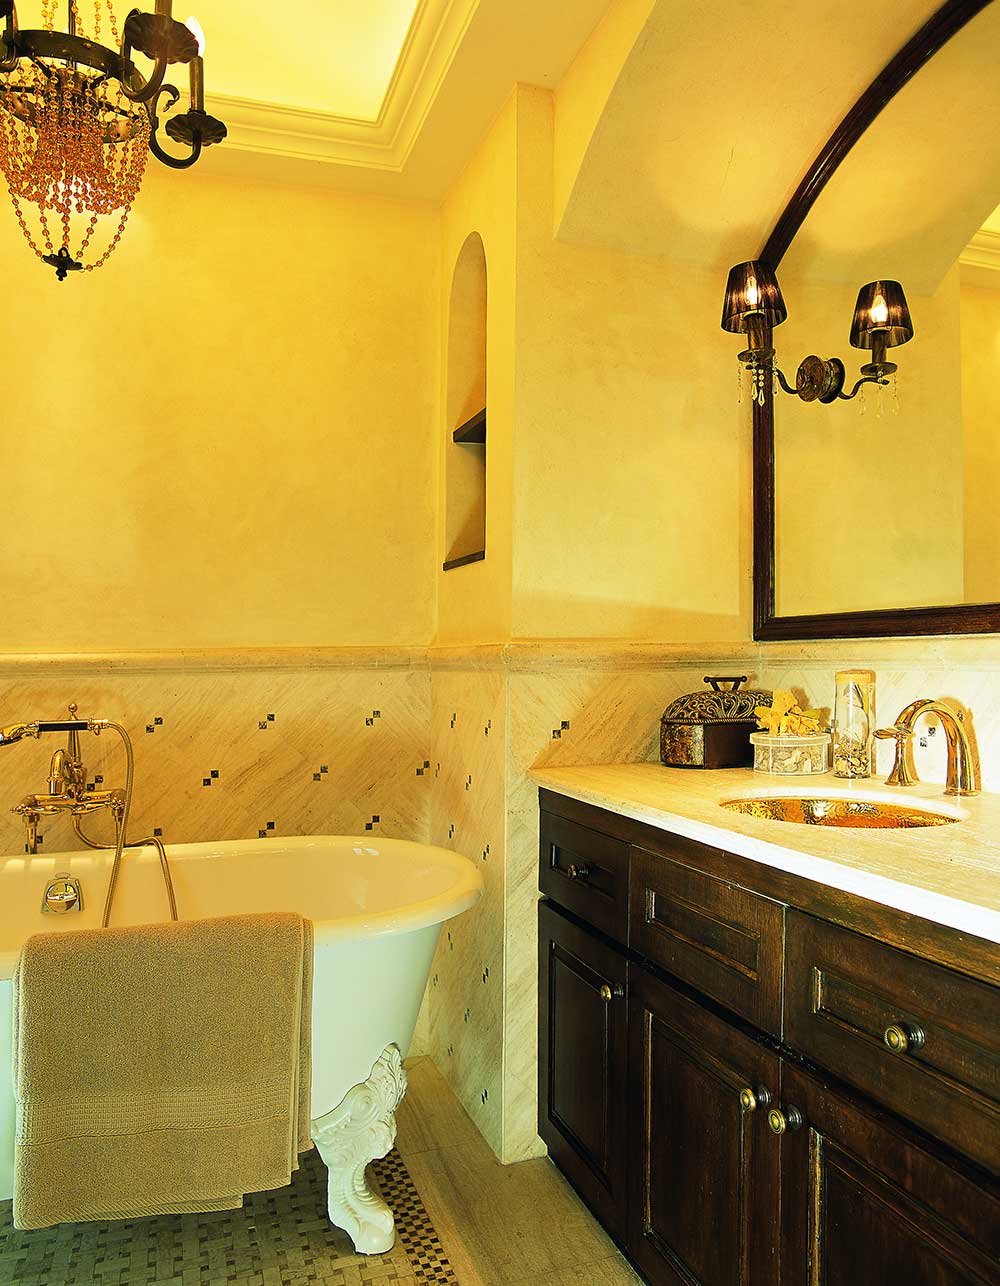 卫生间墙壁则由浅黄色壁纸和瓷砖装饰，清新素雅，明亮雅致。